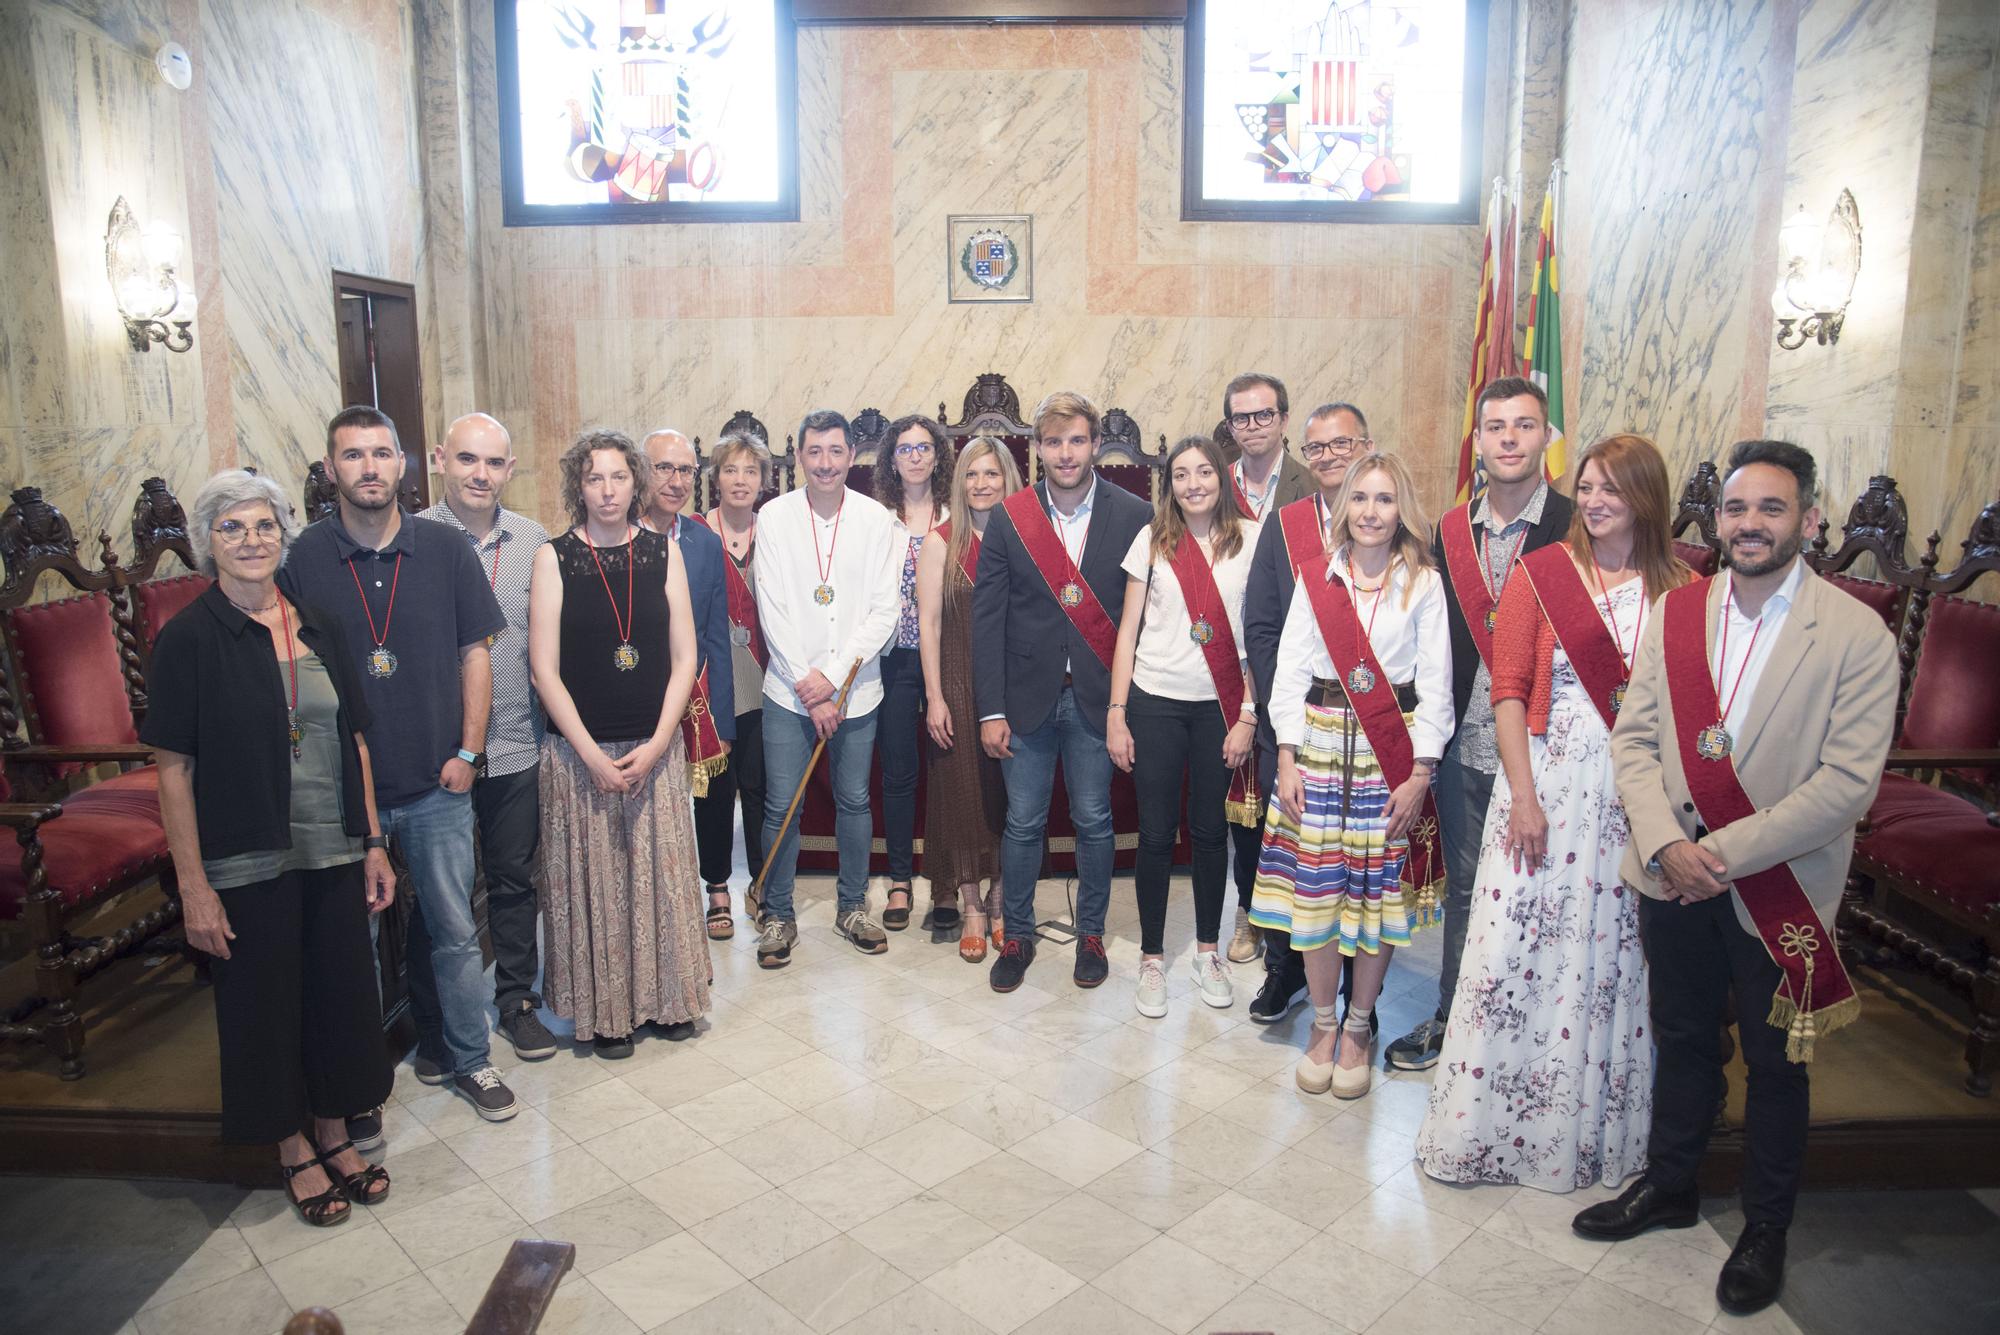 El ple de constitució del nou Ajuntament de Berga, en imatges